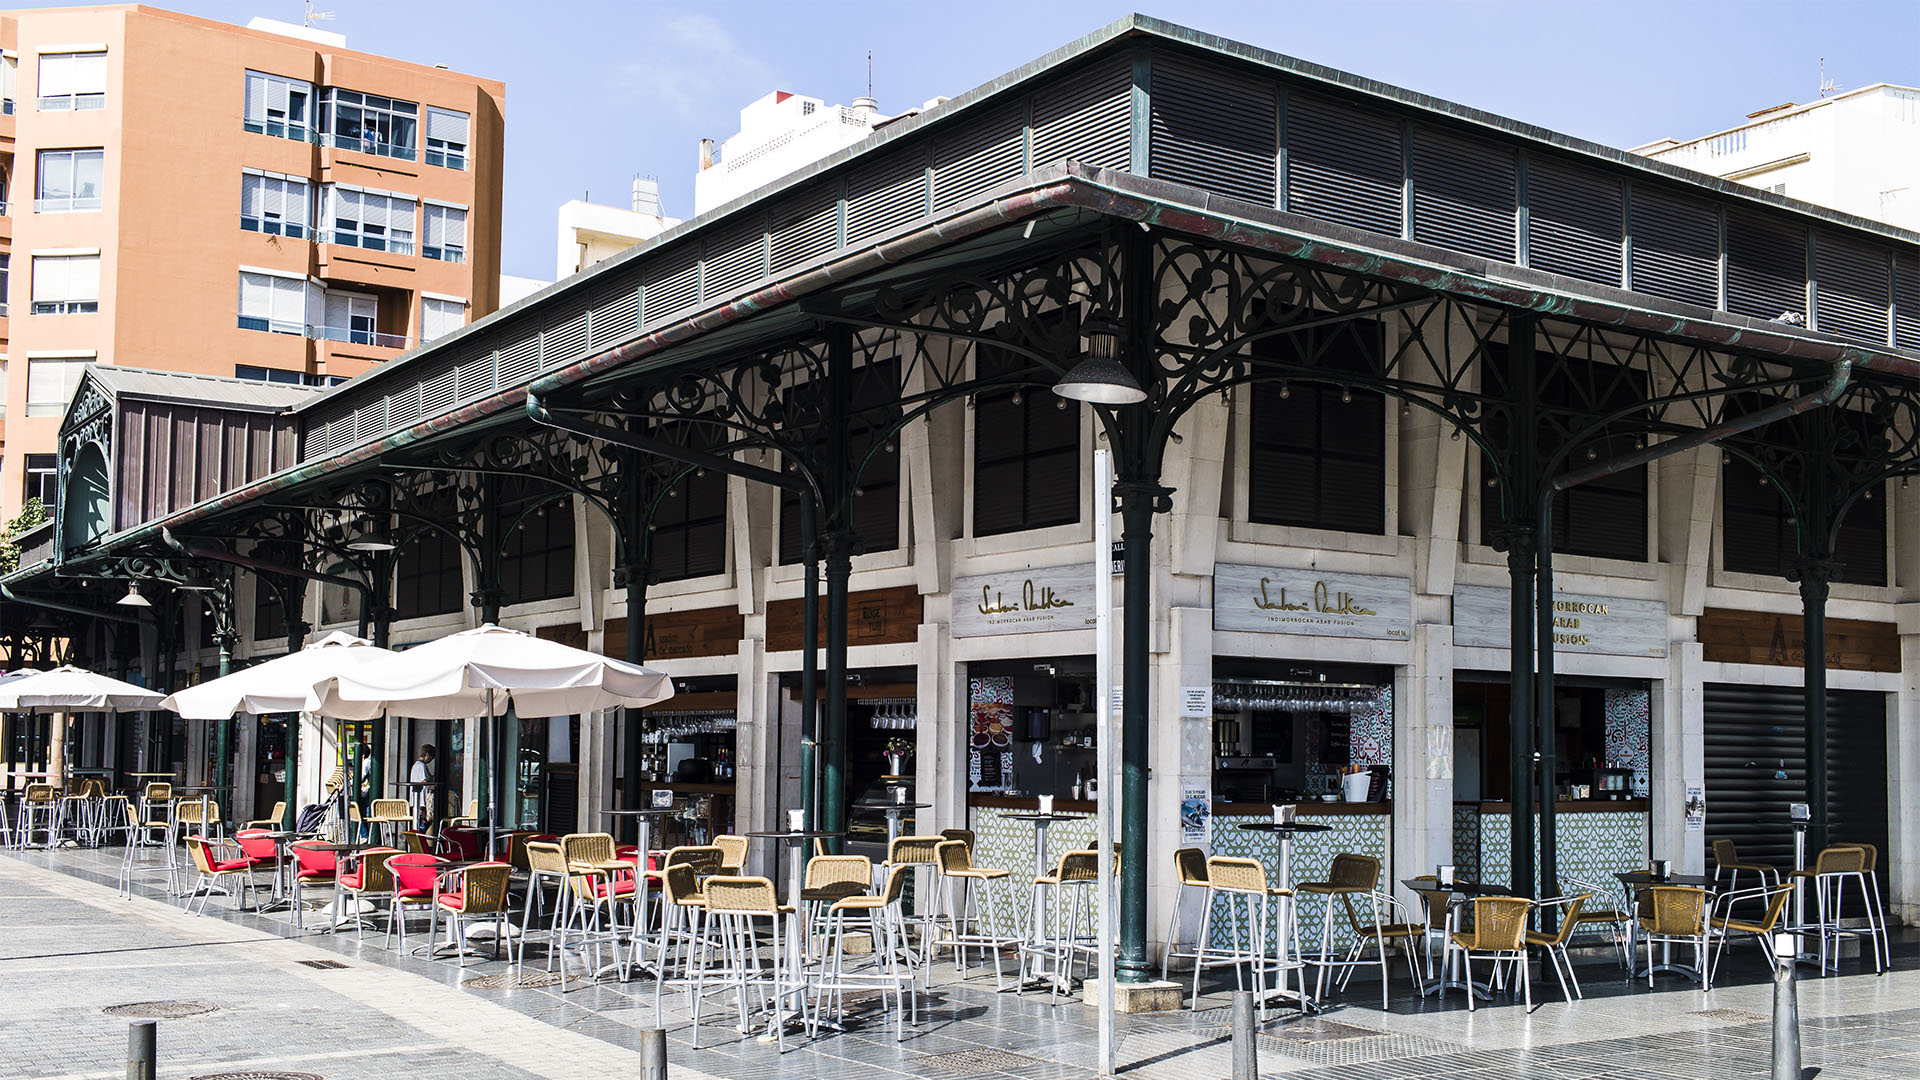 Mercado del Puerto Las Palmas Gran Canaria: Umringt von hervorragenden Cafes und Restaurants. Besonders unter der Woche abends angesagter Szenetreffpunkt der jungen Geschäftswelt von Las Palmas.